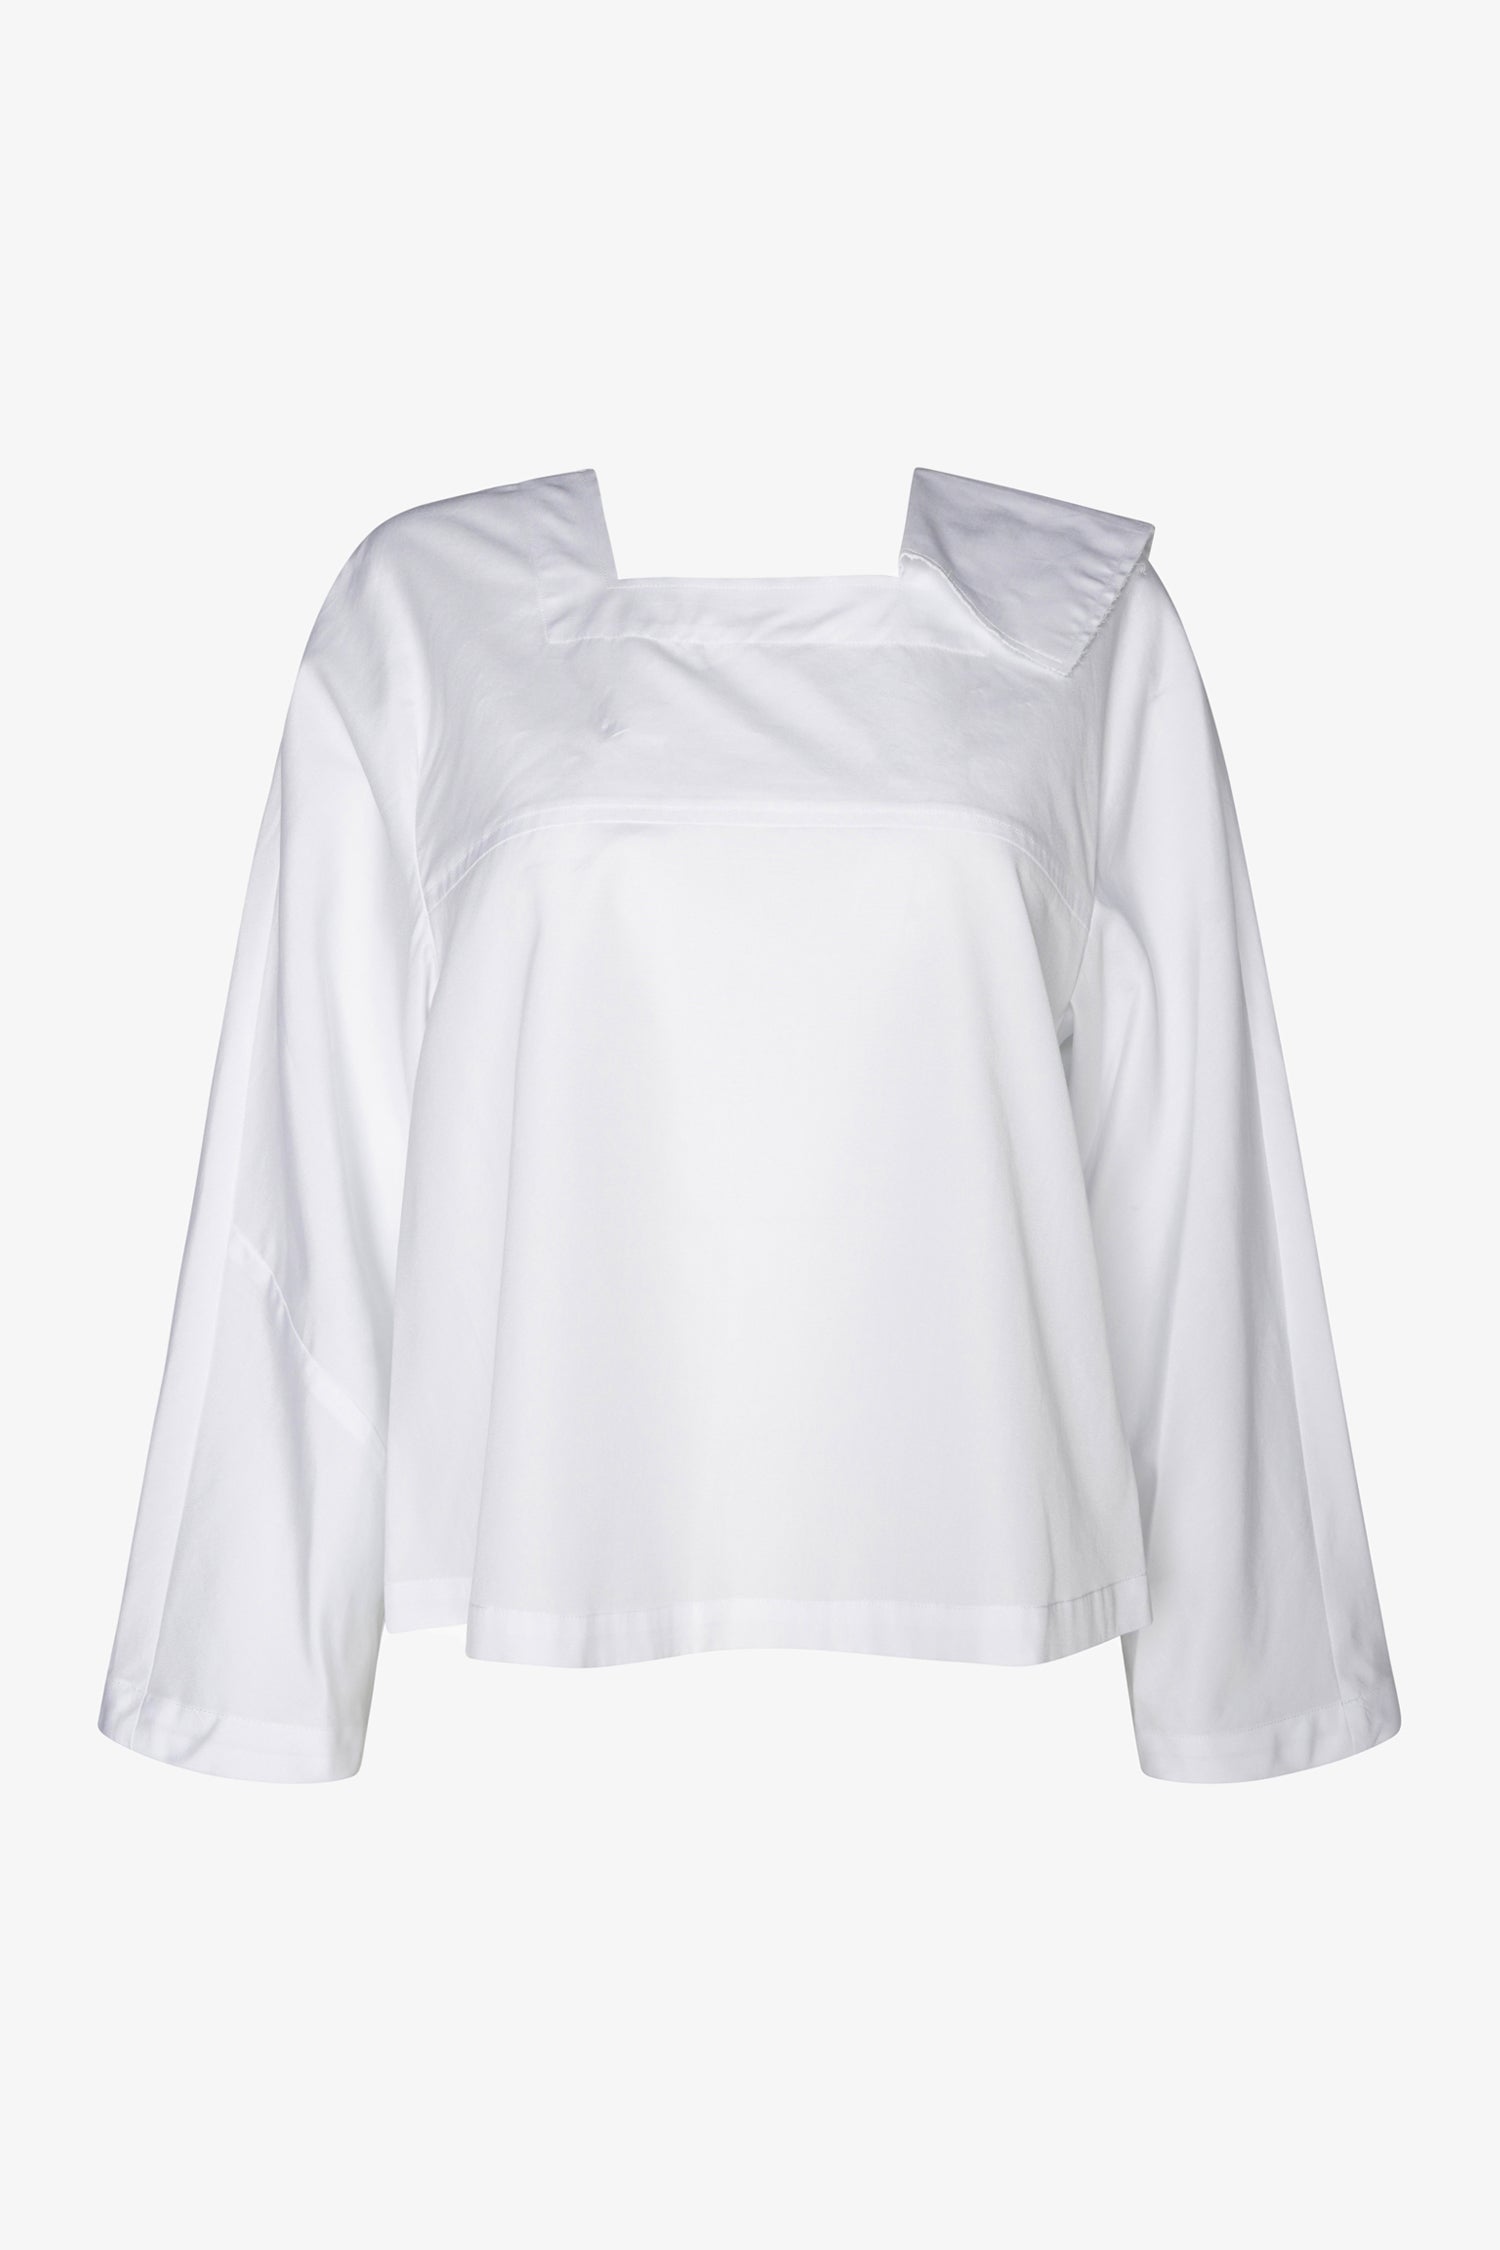 Selectshop FRAME - COMME DES GARÇONS GIRL Half Square Collar Blouse Shirts Dubai